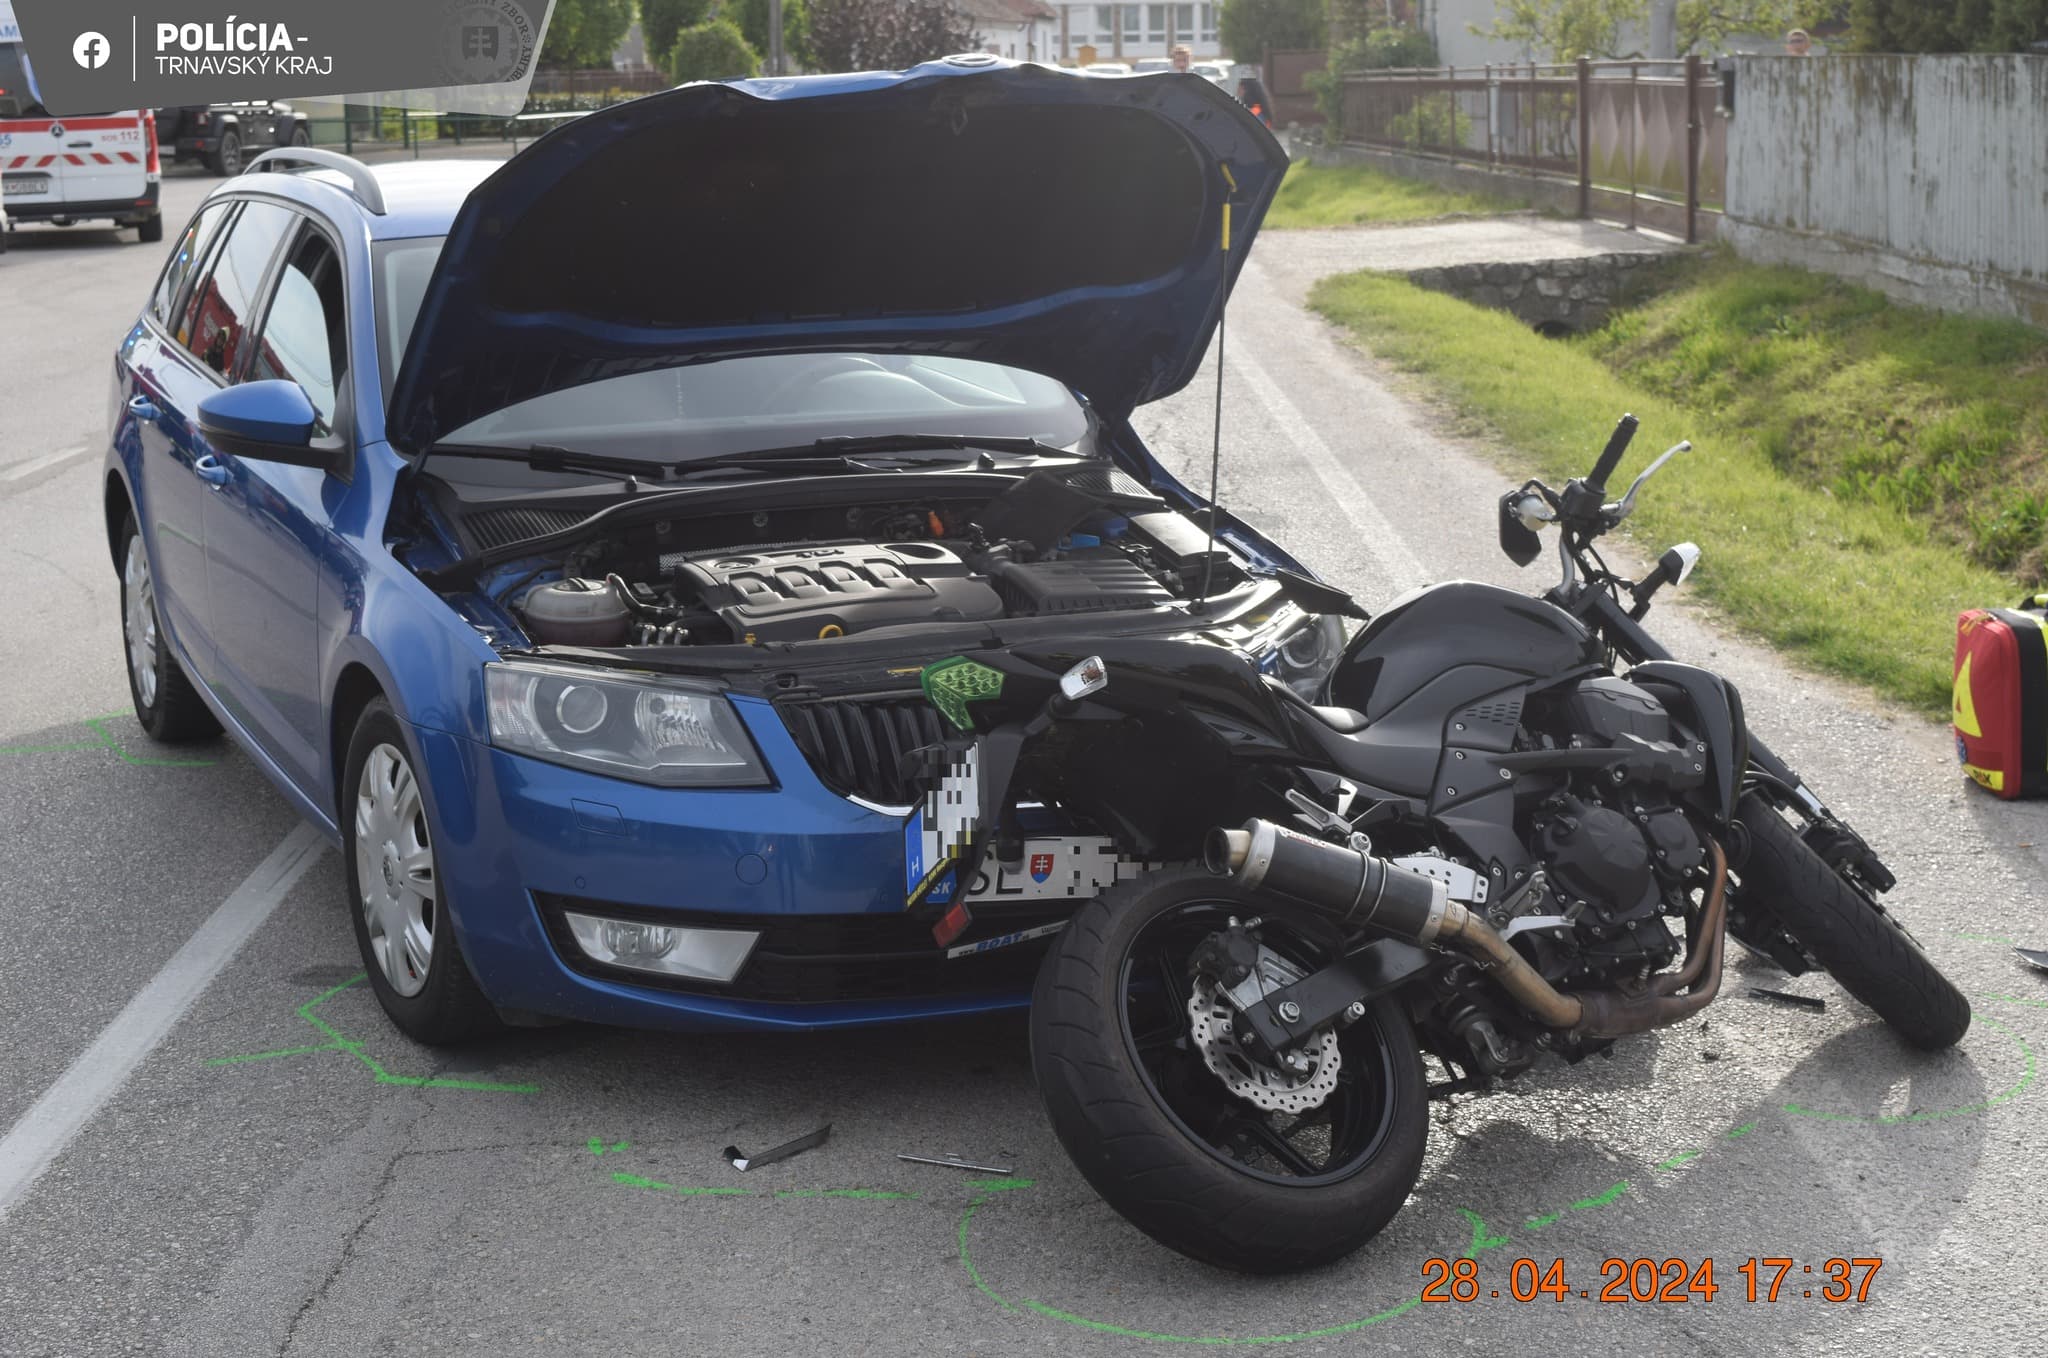 Súlyos baleset Szapon, az Octavia sofőrje nem adott előnyt az érkező motorosnak (FOTÓK)